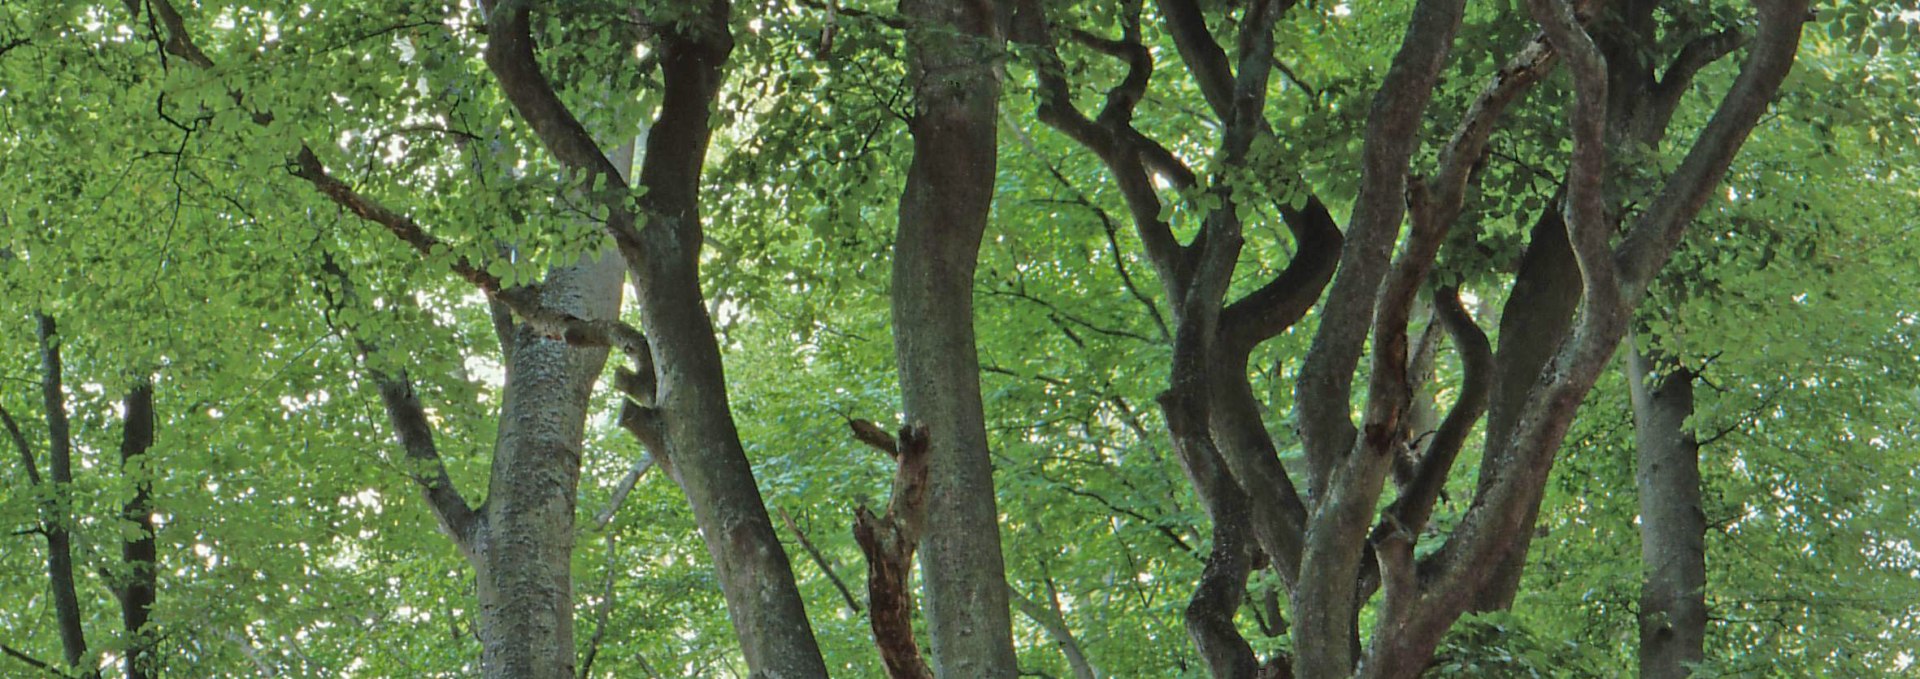 photo_tree_crowns, © Biosphärenreservatsamt Südost-Rügen